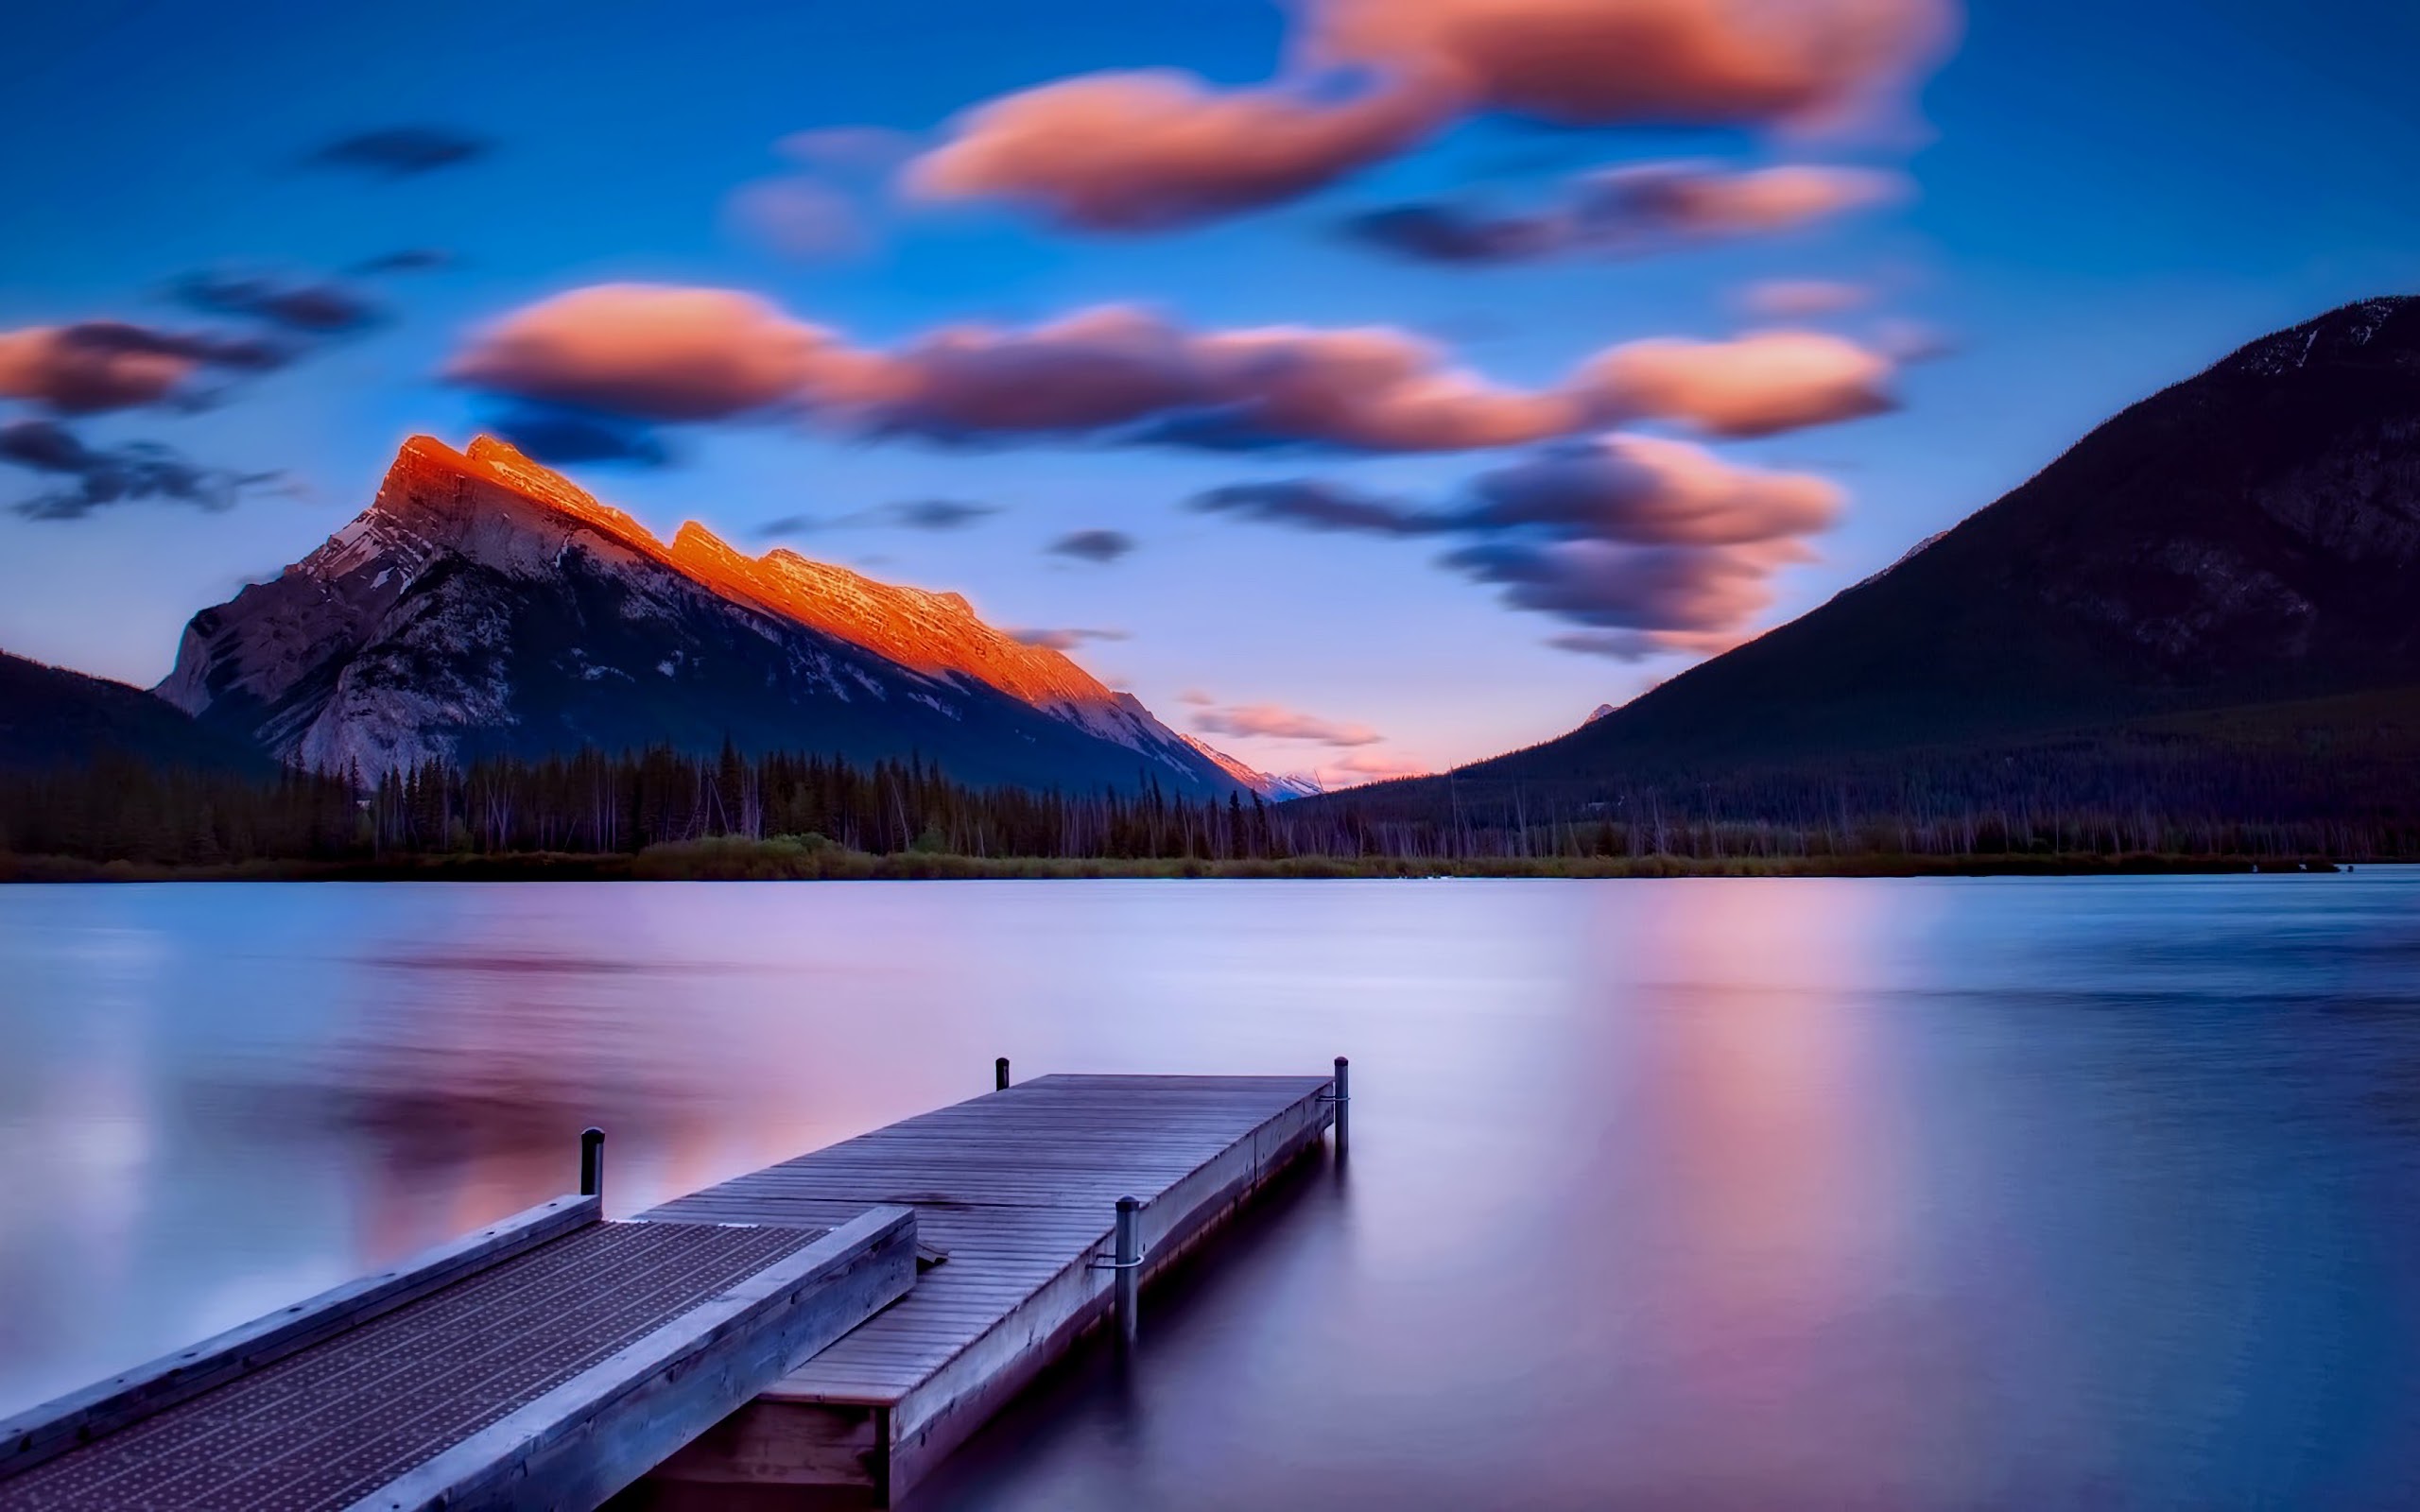 Lake, Bridge, Mountains, Scenery, 4K, 3840x2160, #19 Wallpaper PC Desktop